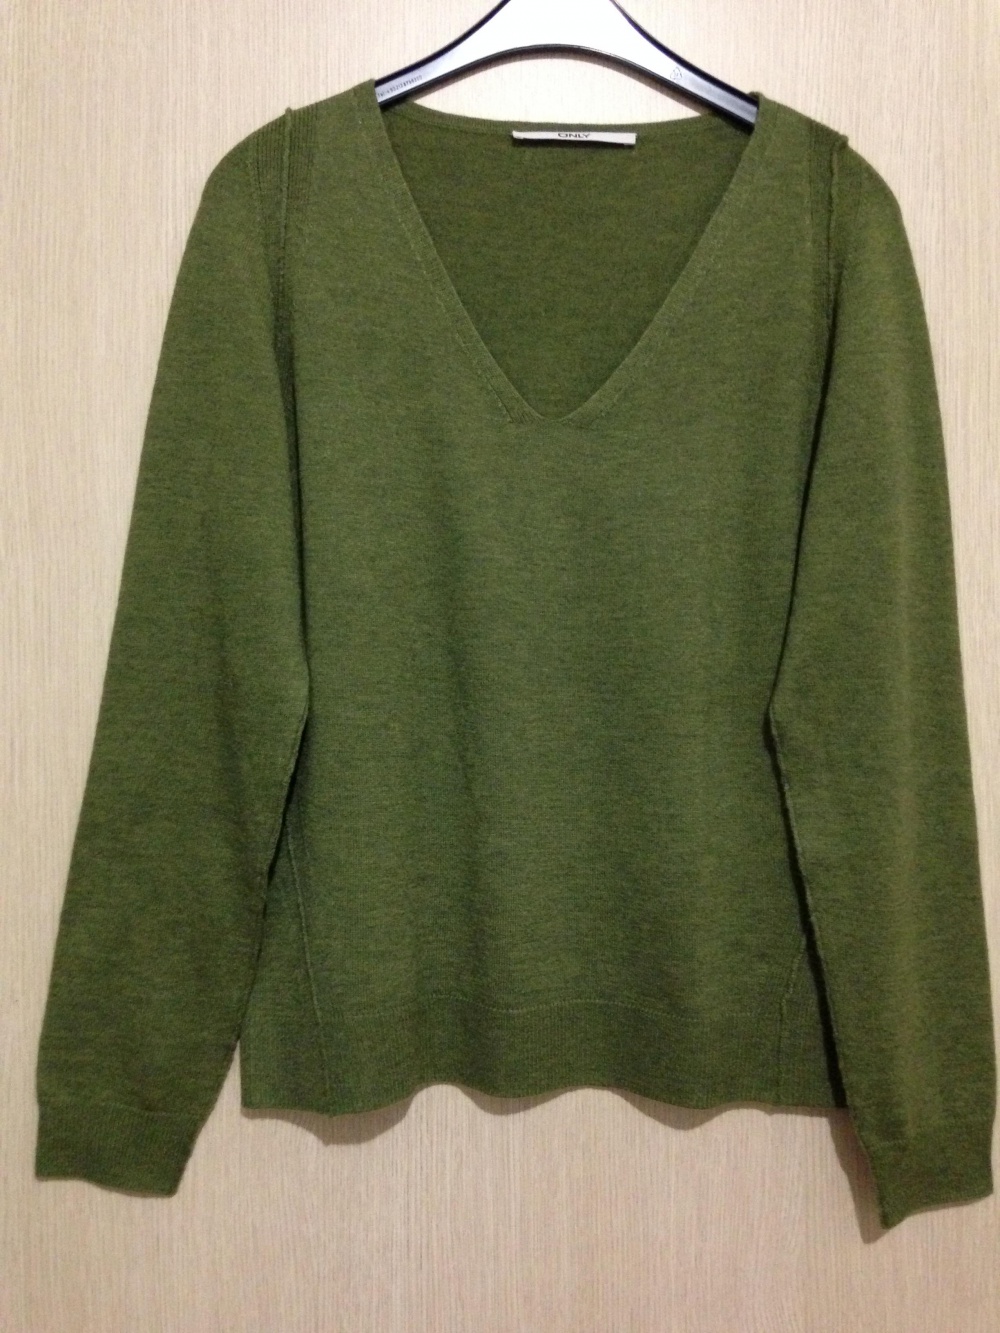 Пуловер " ONLI ", 46-48 размер, Дания.